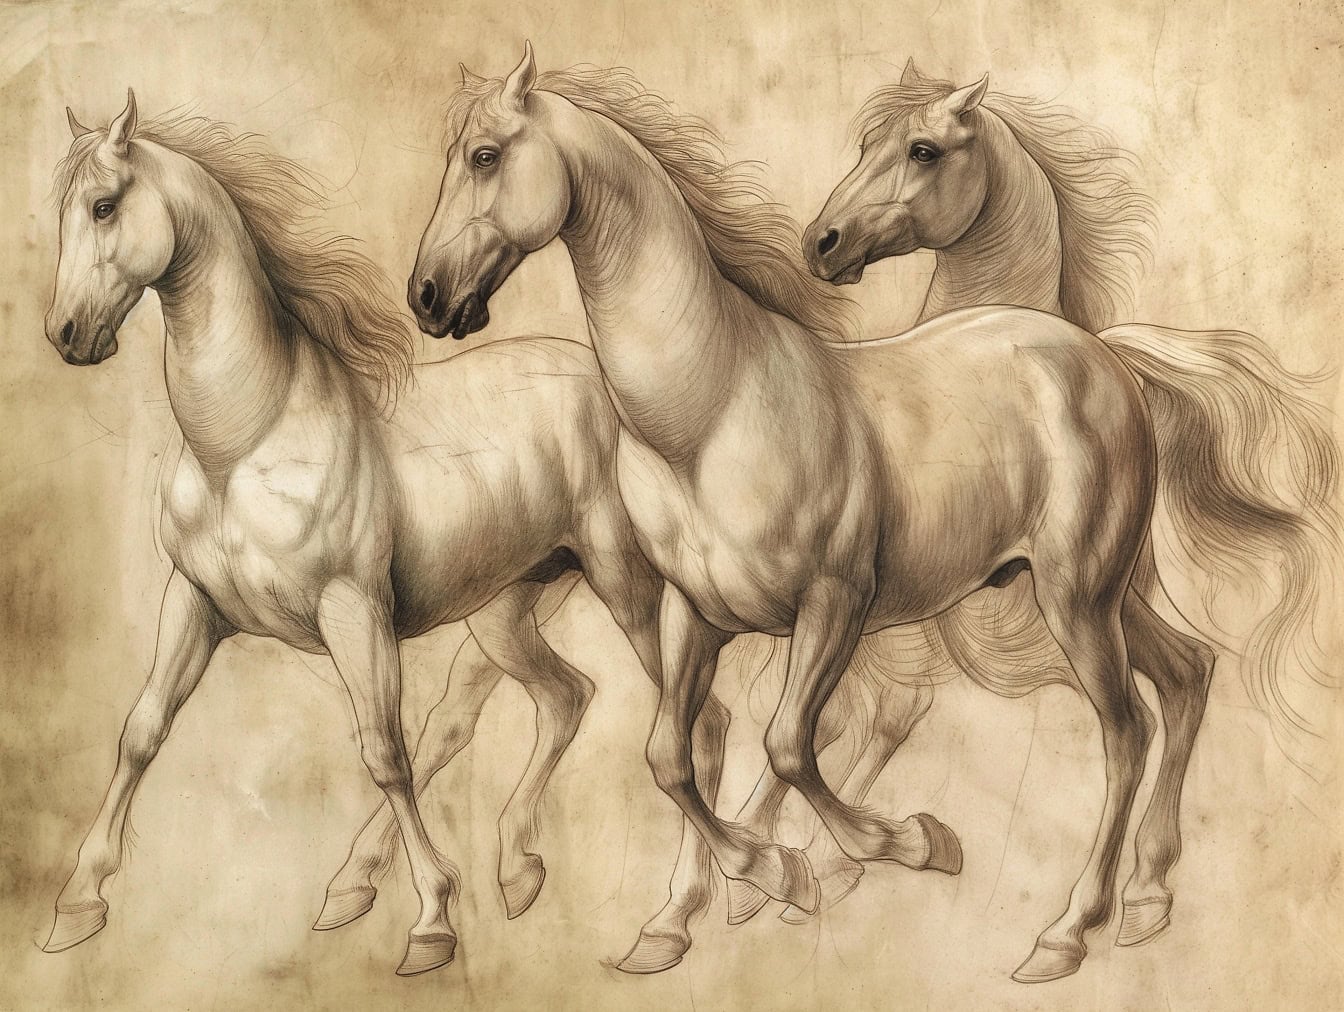 Малюнок від руки трьох коней з довгою гривою на галопі, ескіз на старому вицвілому жовтуватому папері